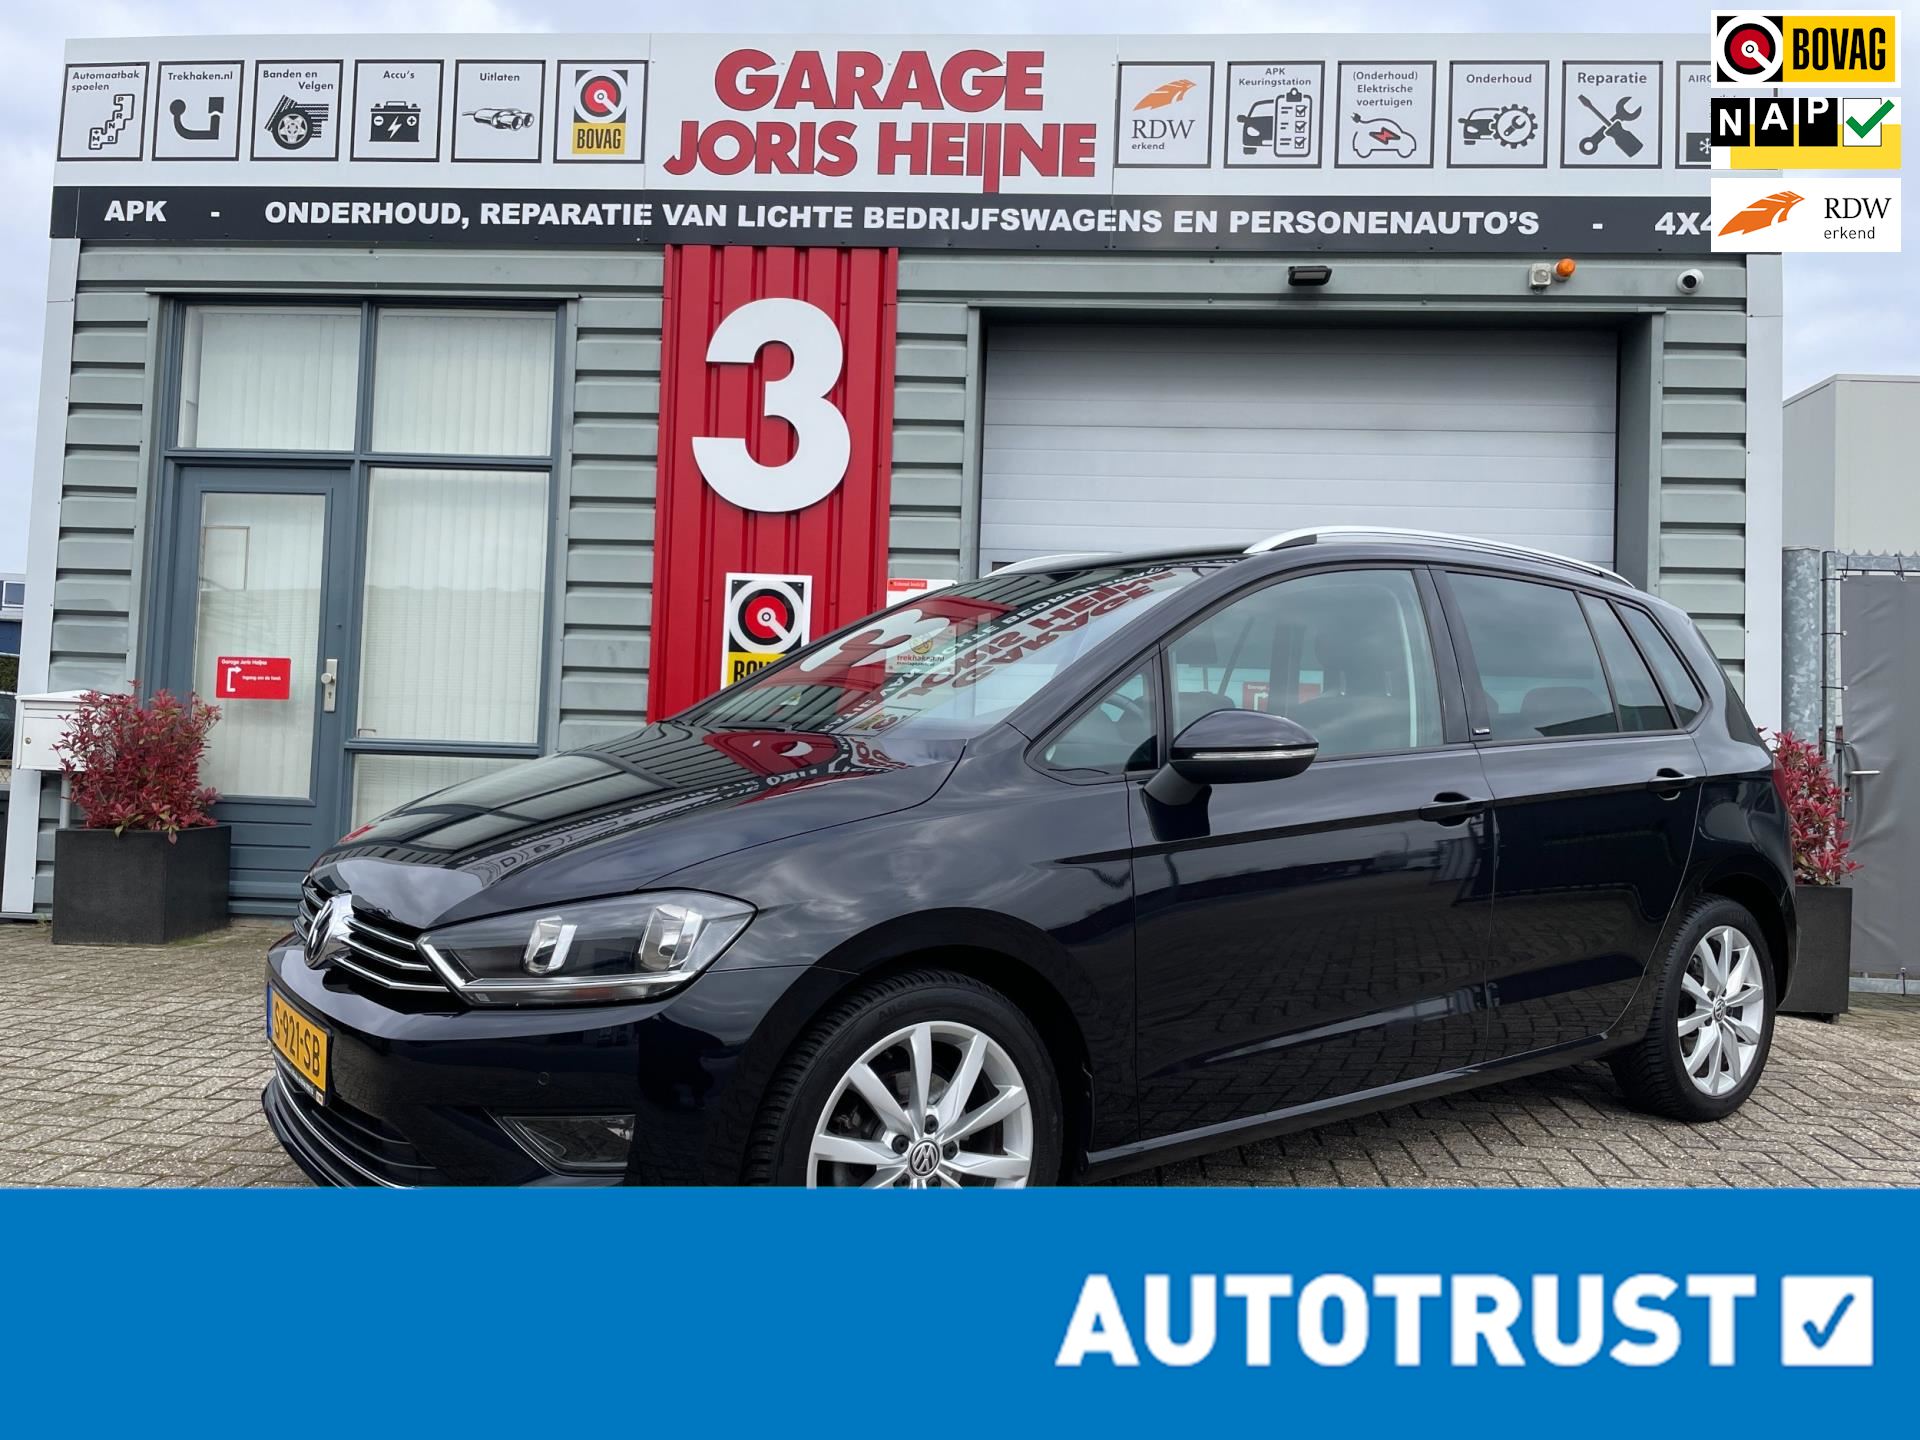 Volkswagen GOLF SPORTSVAN occasion - Garage Joris Heijne